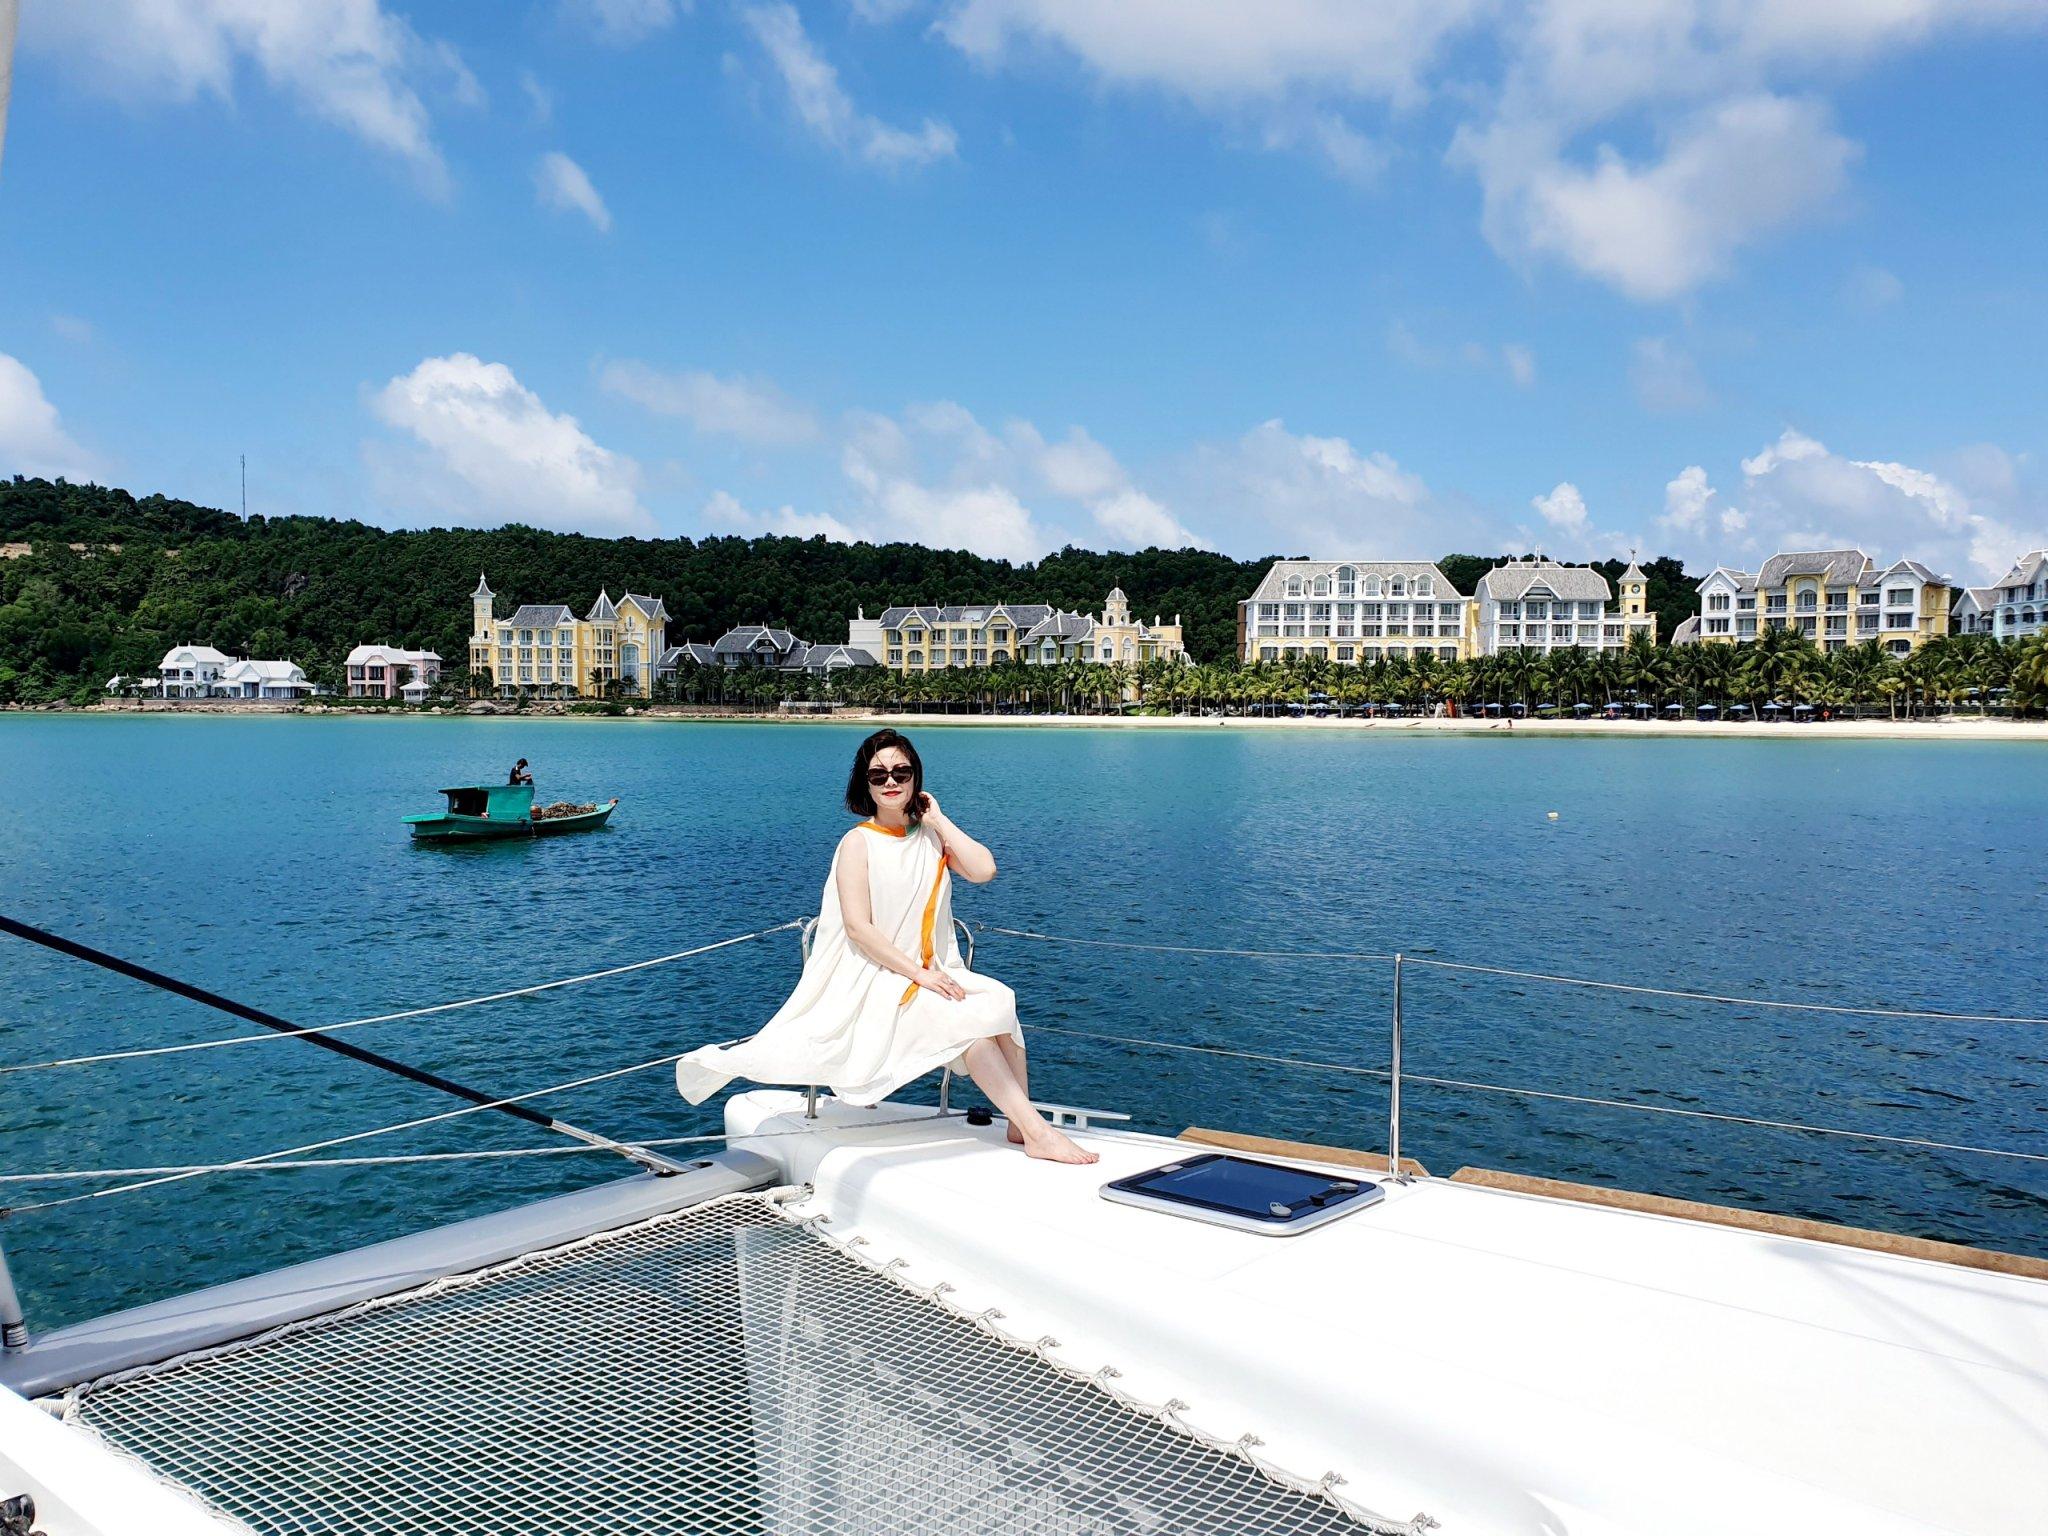 Du ngoạn thiên đường biển đảo Phú Quốc với những trải nghiệm có một không hai mà Adavigo cung cấp cho chuyến nghỉ dưỡng của bạn